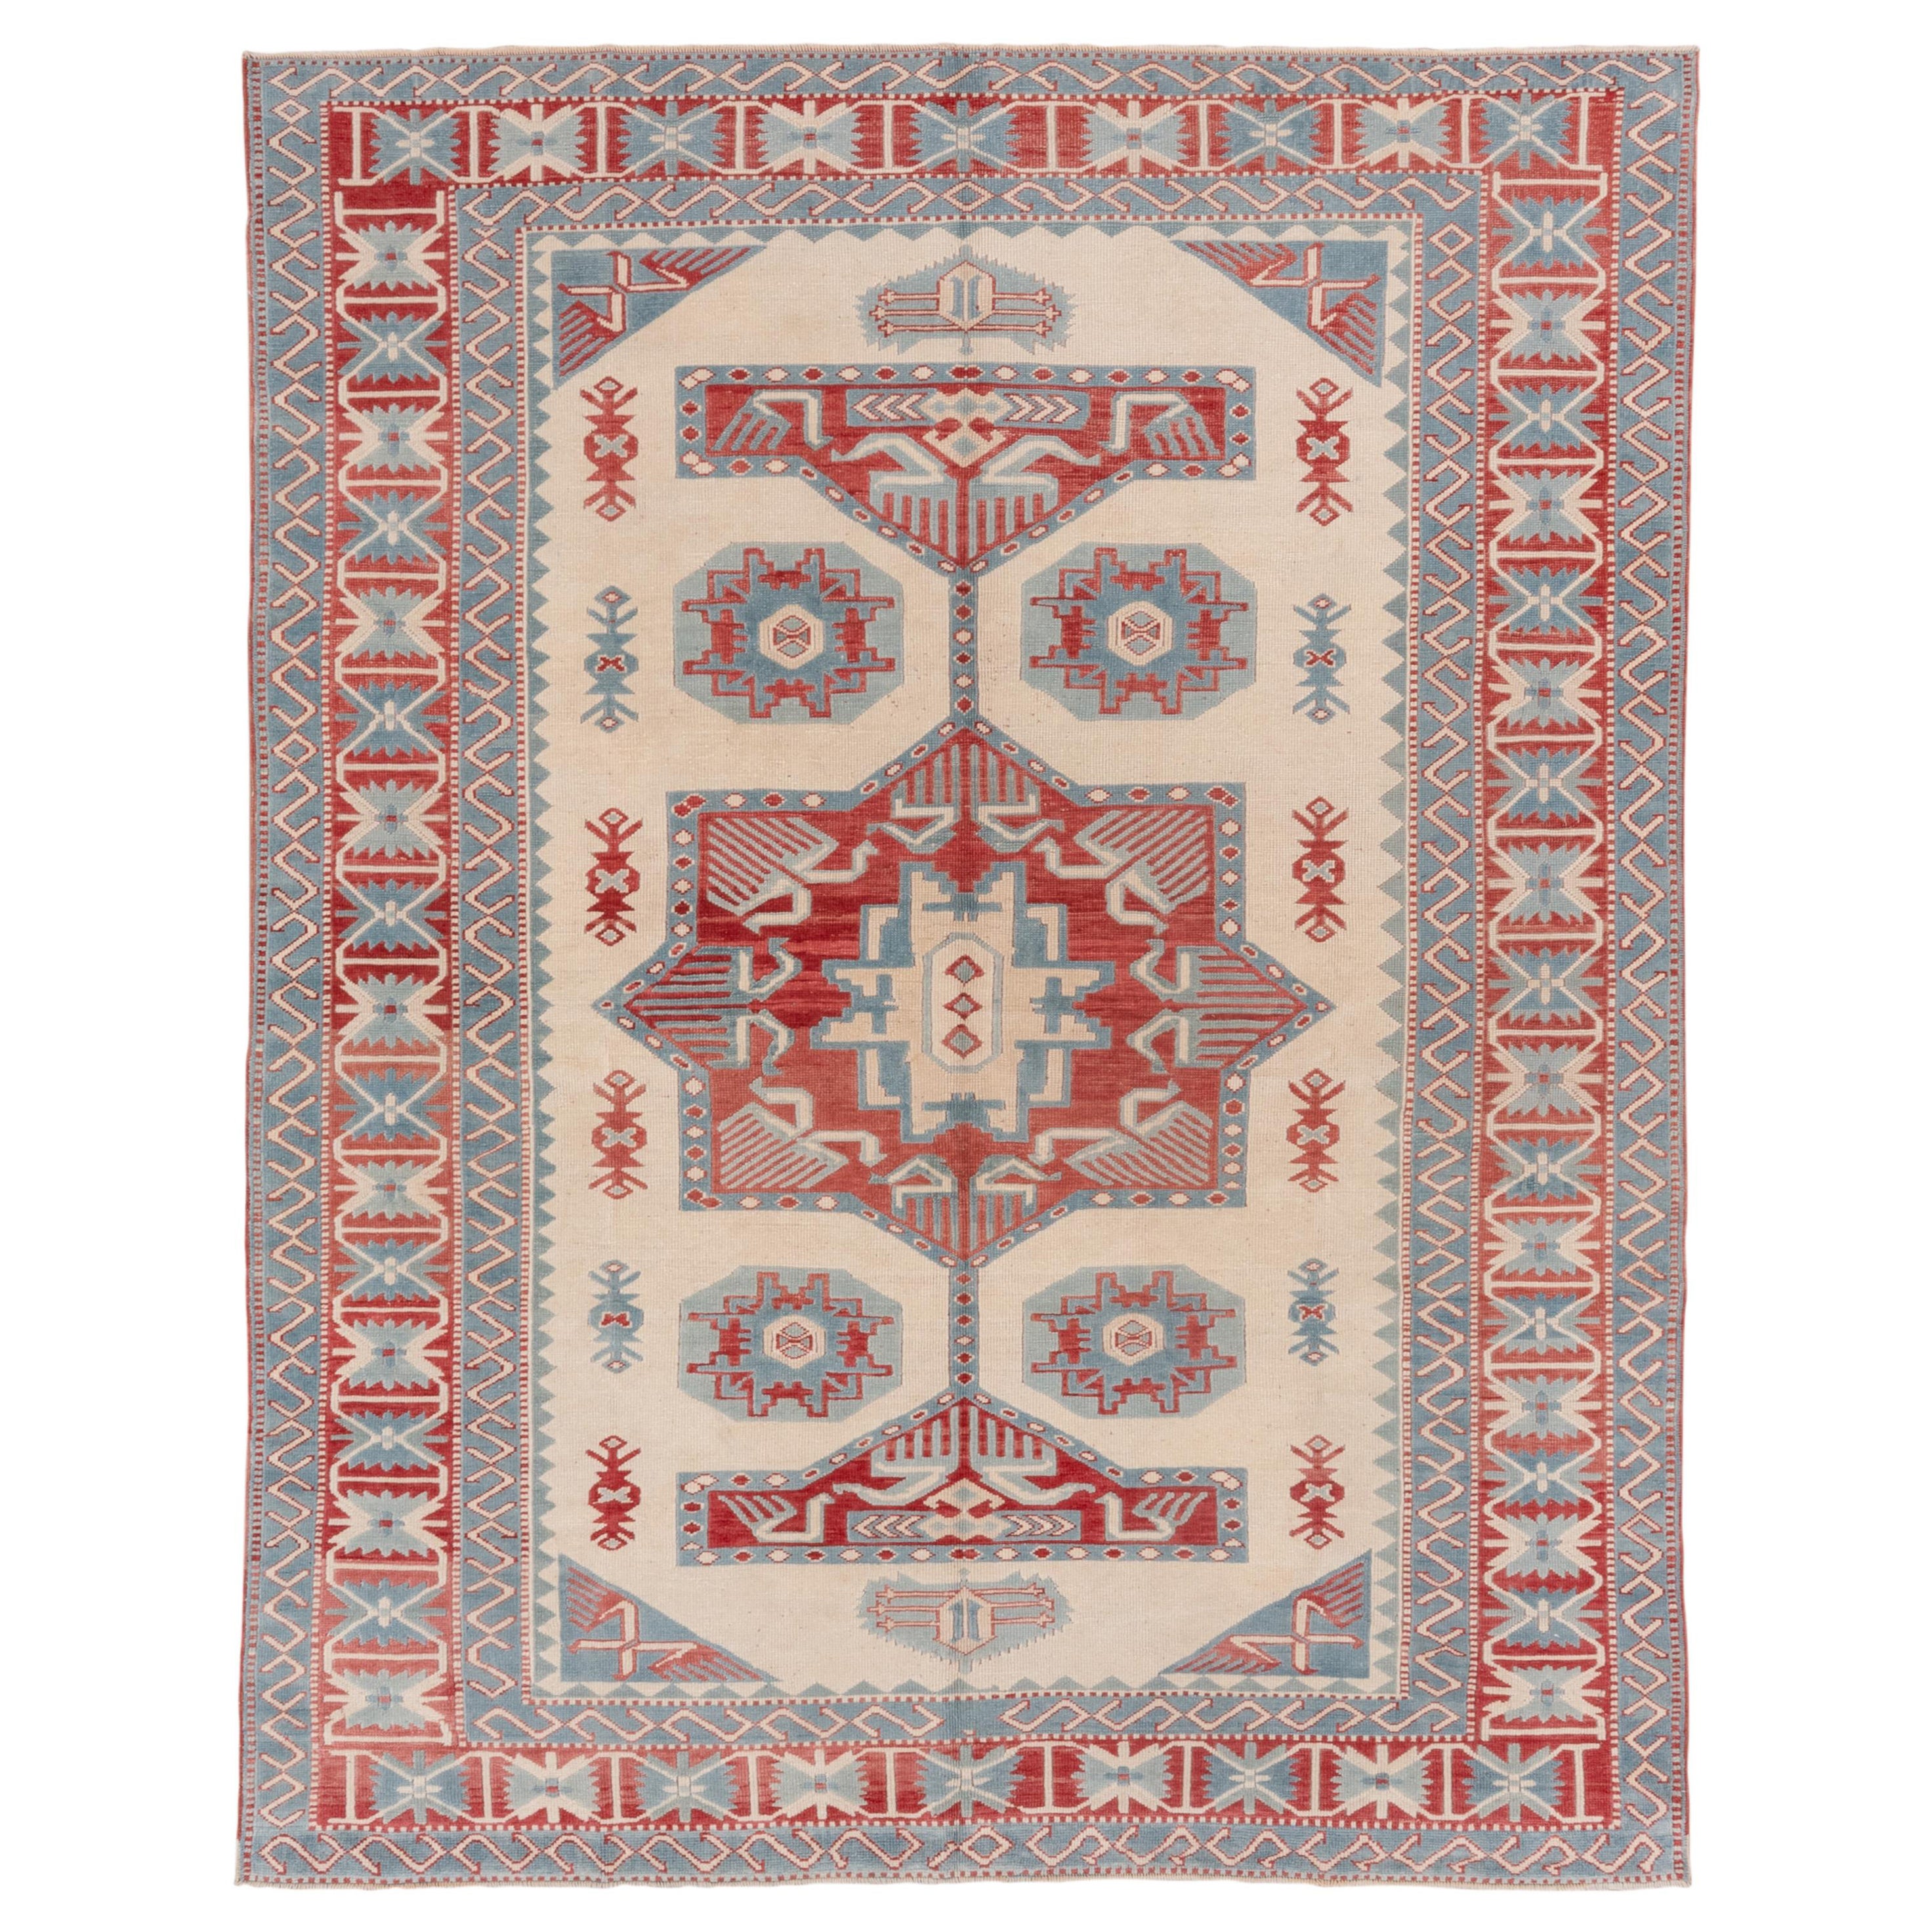 Türkischer Oushak-Teppich im Vintage-Stil, Geometrisches rotes Medaillon, cremefarbenes Außenfeld